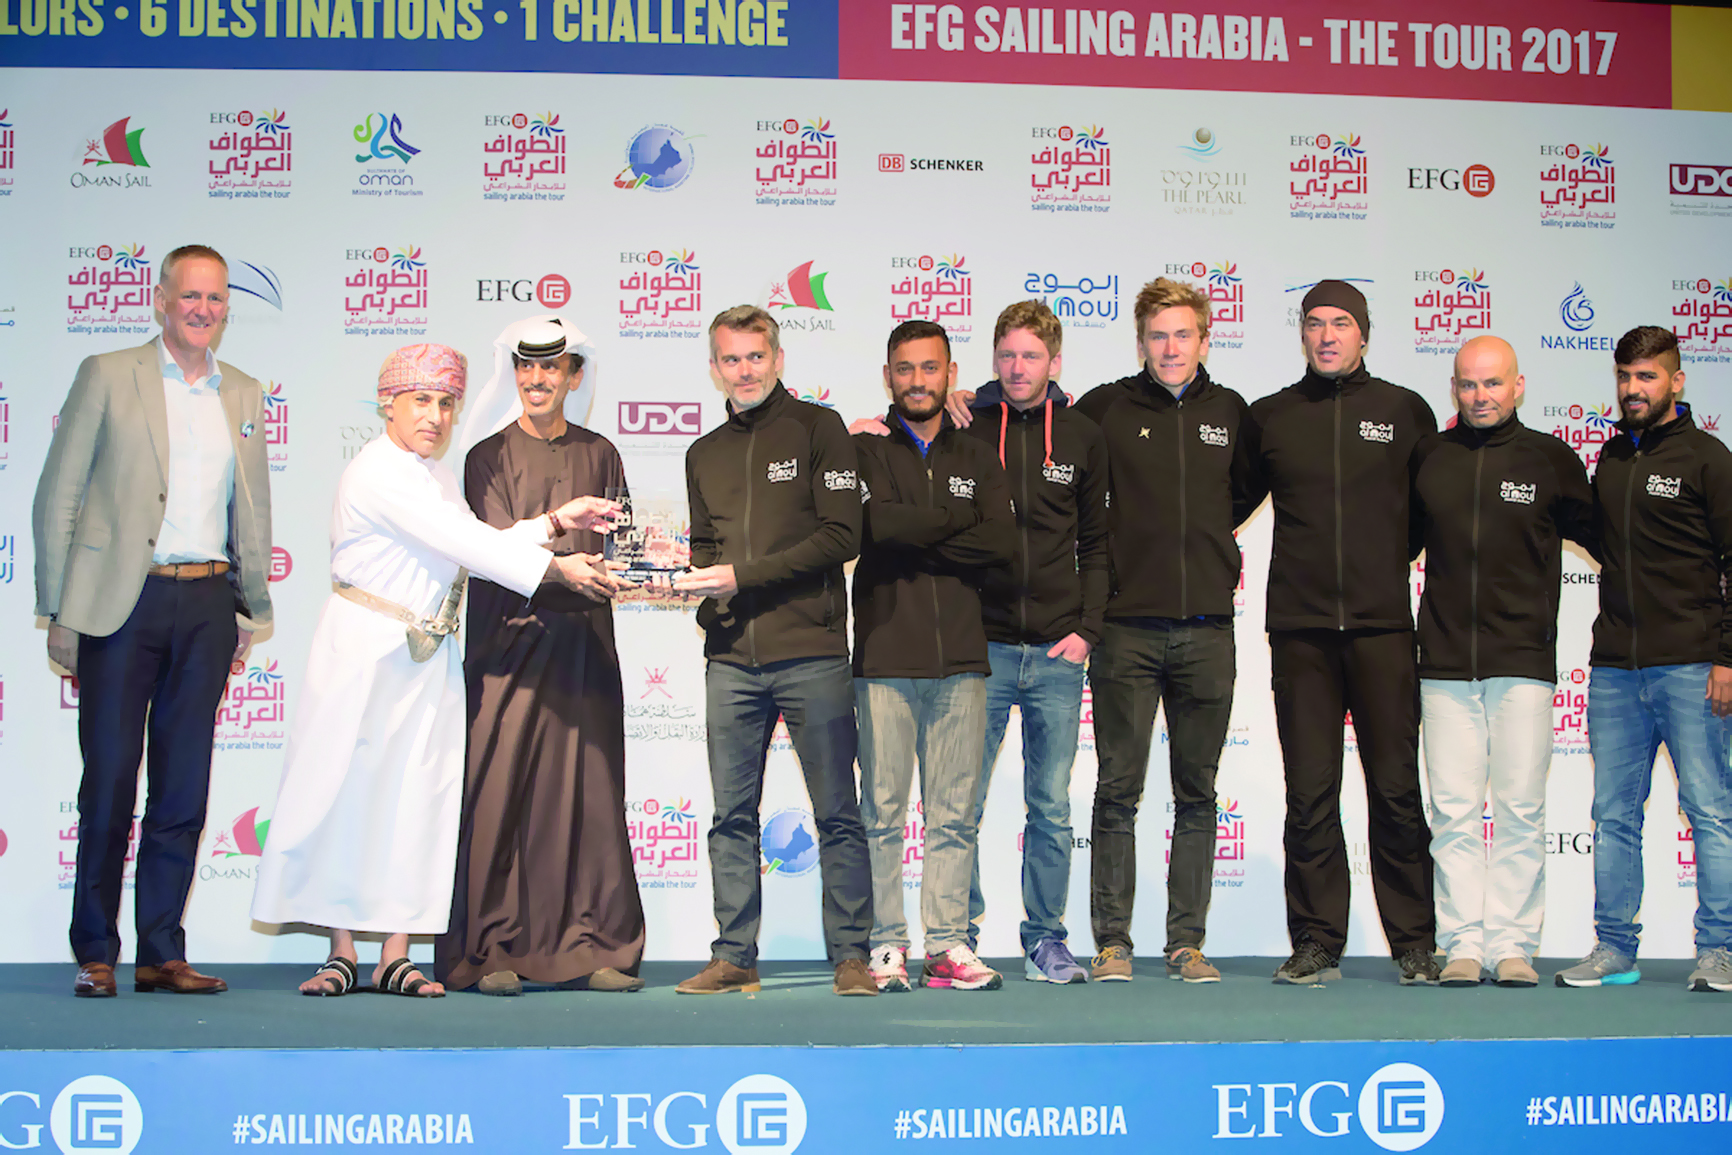 في سباق الطواف العربي للإبحار الشراعي 

انطلاقة قوية للمرحلة الرابعة «أبوظبي - الدوحة» لمسافة 160 ميلاً بحرياً